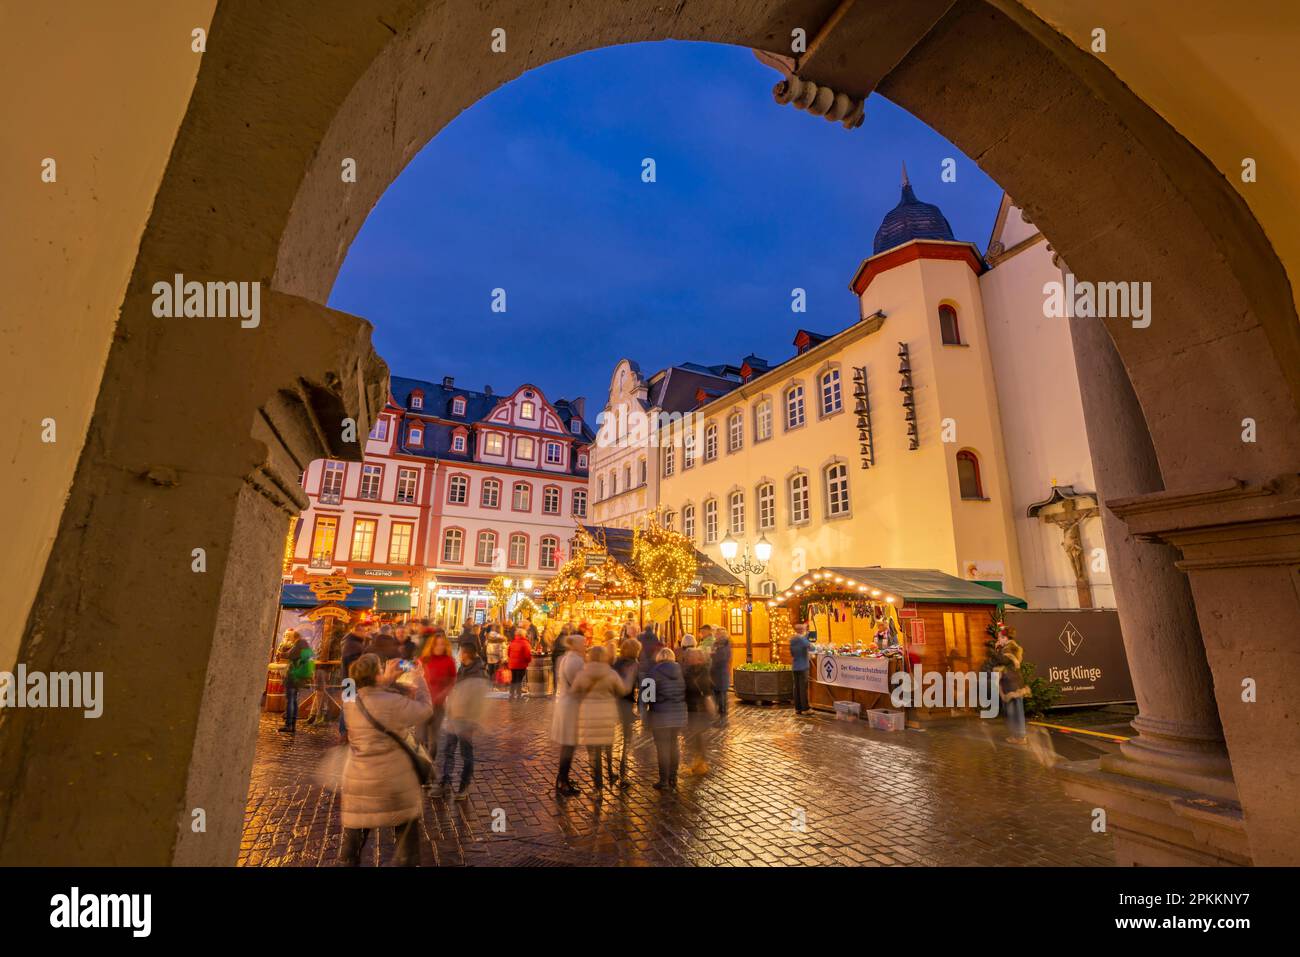 Vue sur le marché de Noël à Jesuitenplatz dans le centre-ville historique à Christmas, Koblenz, Rhénanie-Palatinat, Allemagne, Europe Banque D'Images